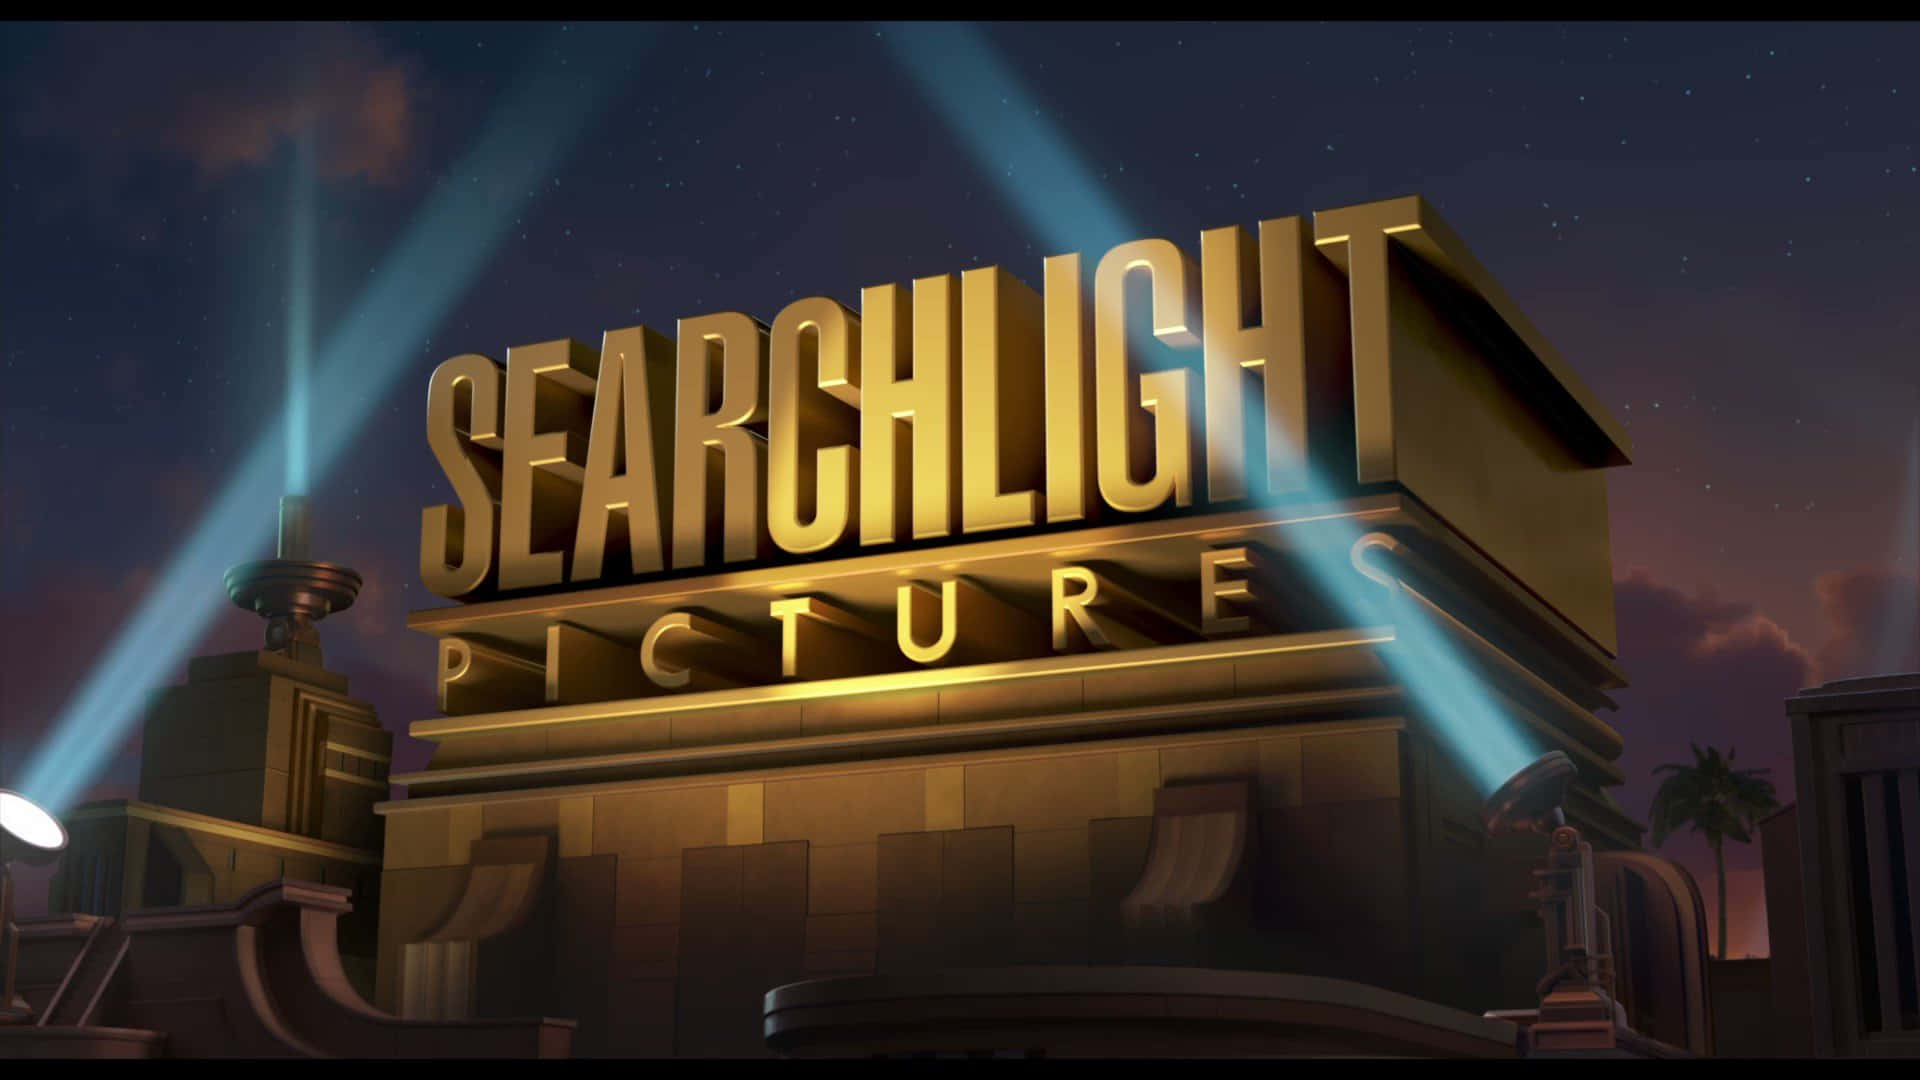 Hãy dành chút thời gian để khám phá logo Searchlight – nó đang chờ đợi bạn ở một góc nào đó trên màn hình. Và đừng lo lắng nếu bạn cần thêm thông tin về hãng phim này, logo chỉ là điểm khởi đầu thú vị cho một chuyến phiêu lưu thưởng thức phim ảnh đầy ý nghĩa.